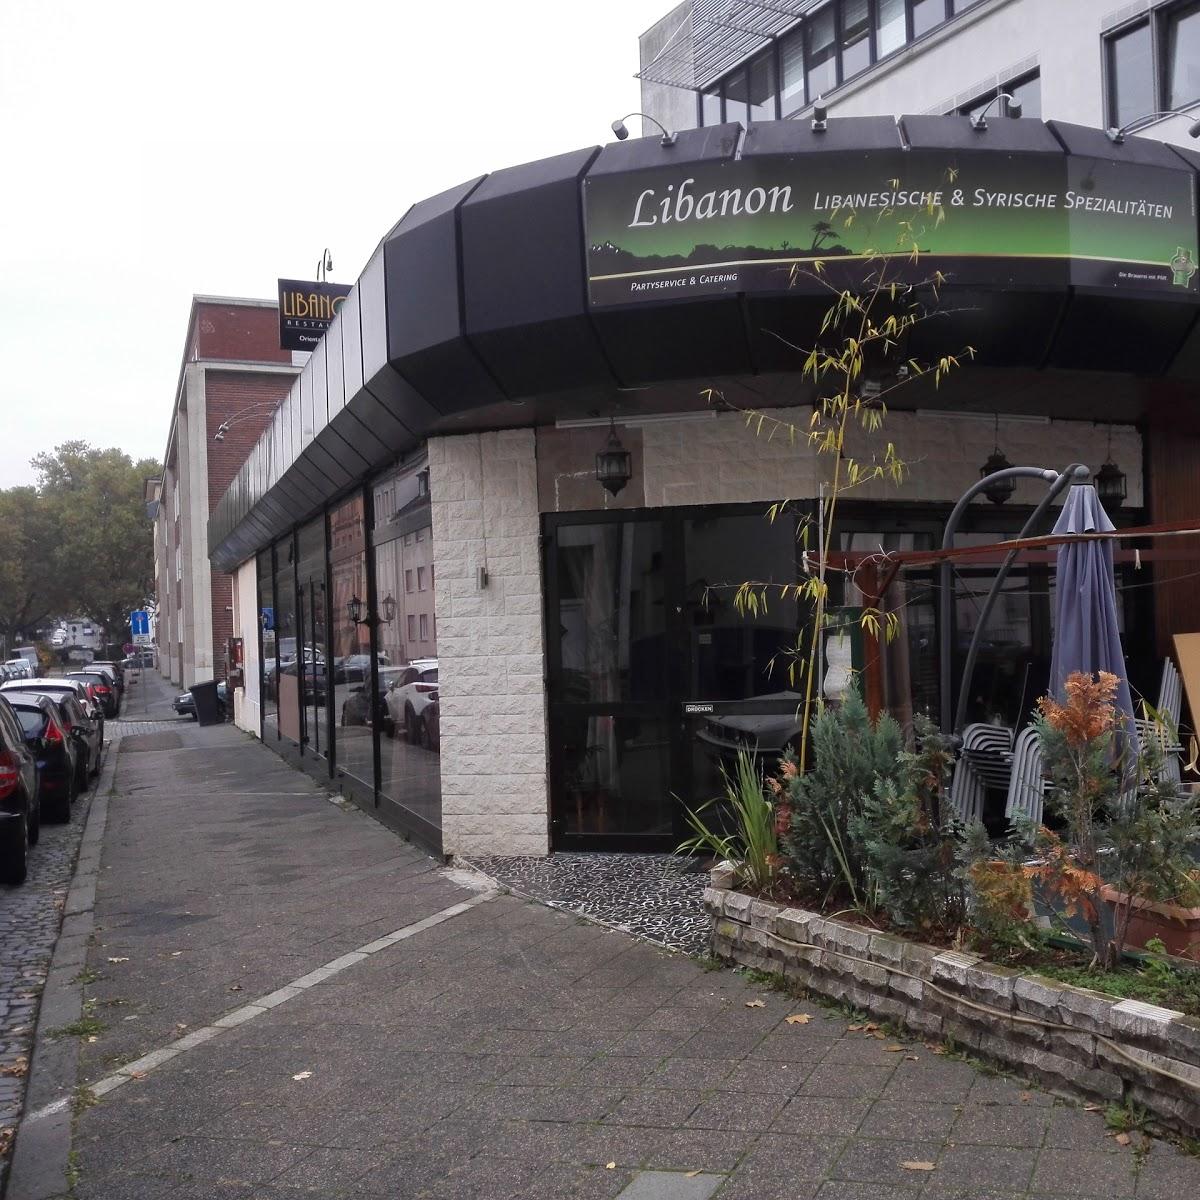 Restaurant "Libanon" in Darmstadt